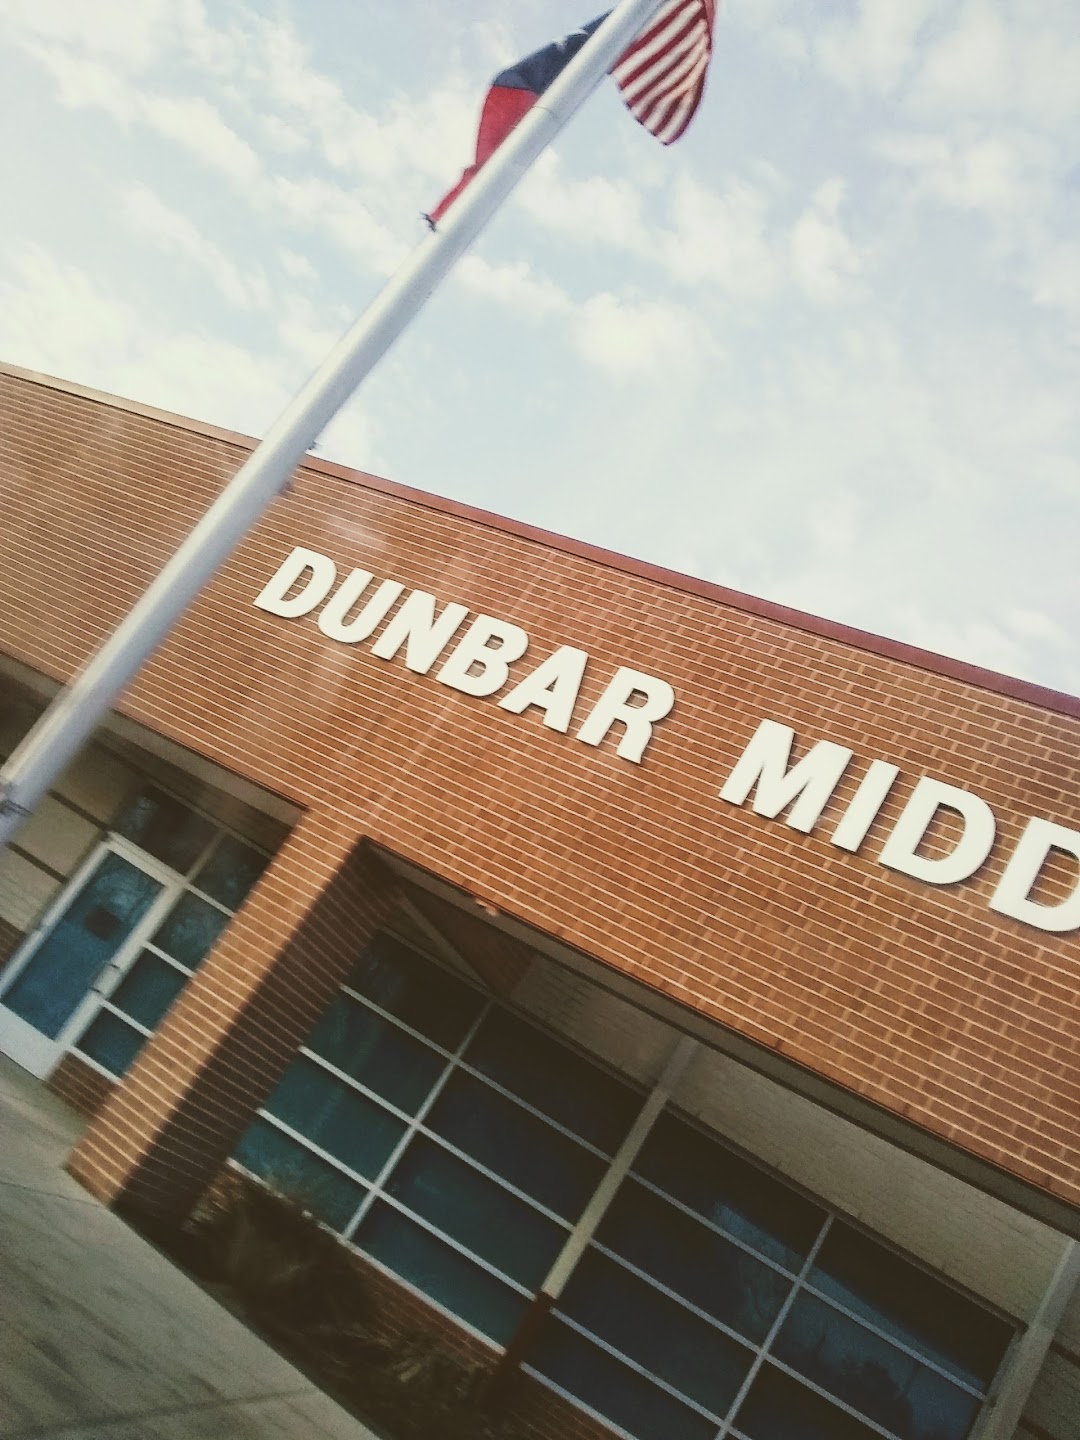 Dunbar Middle School